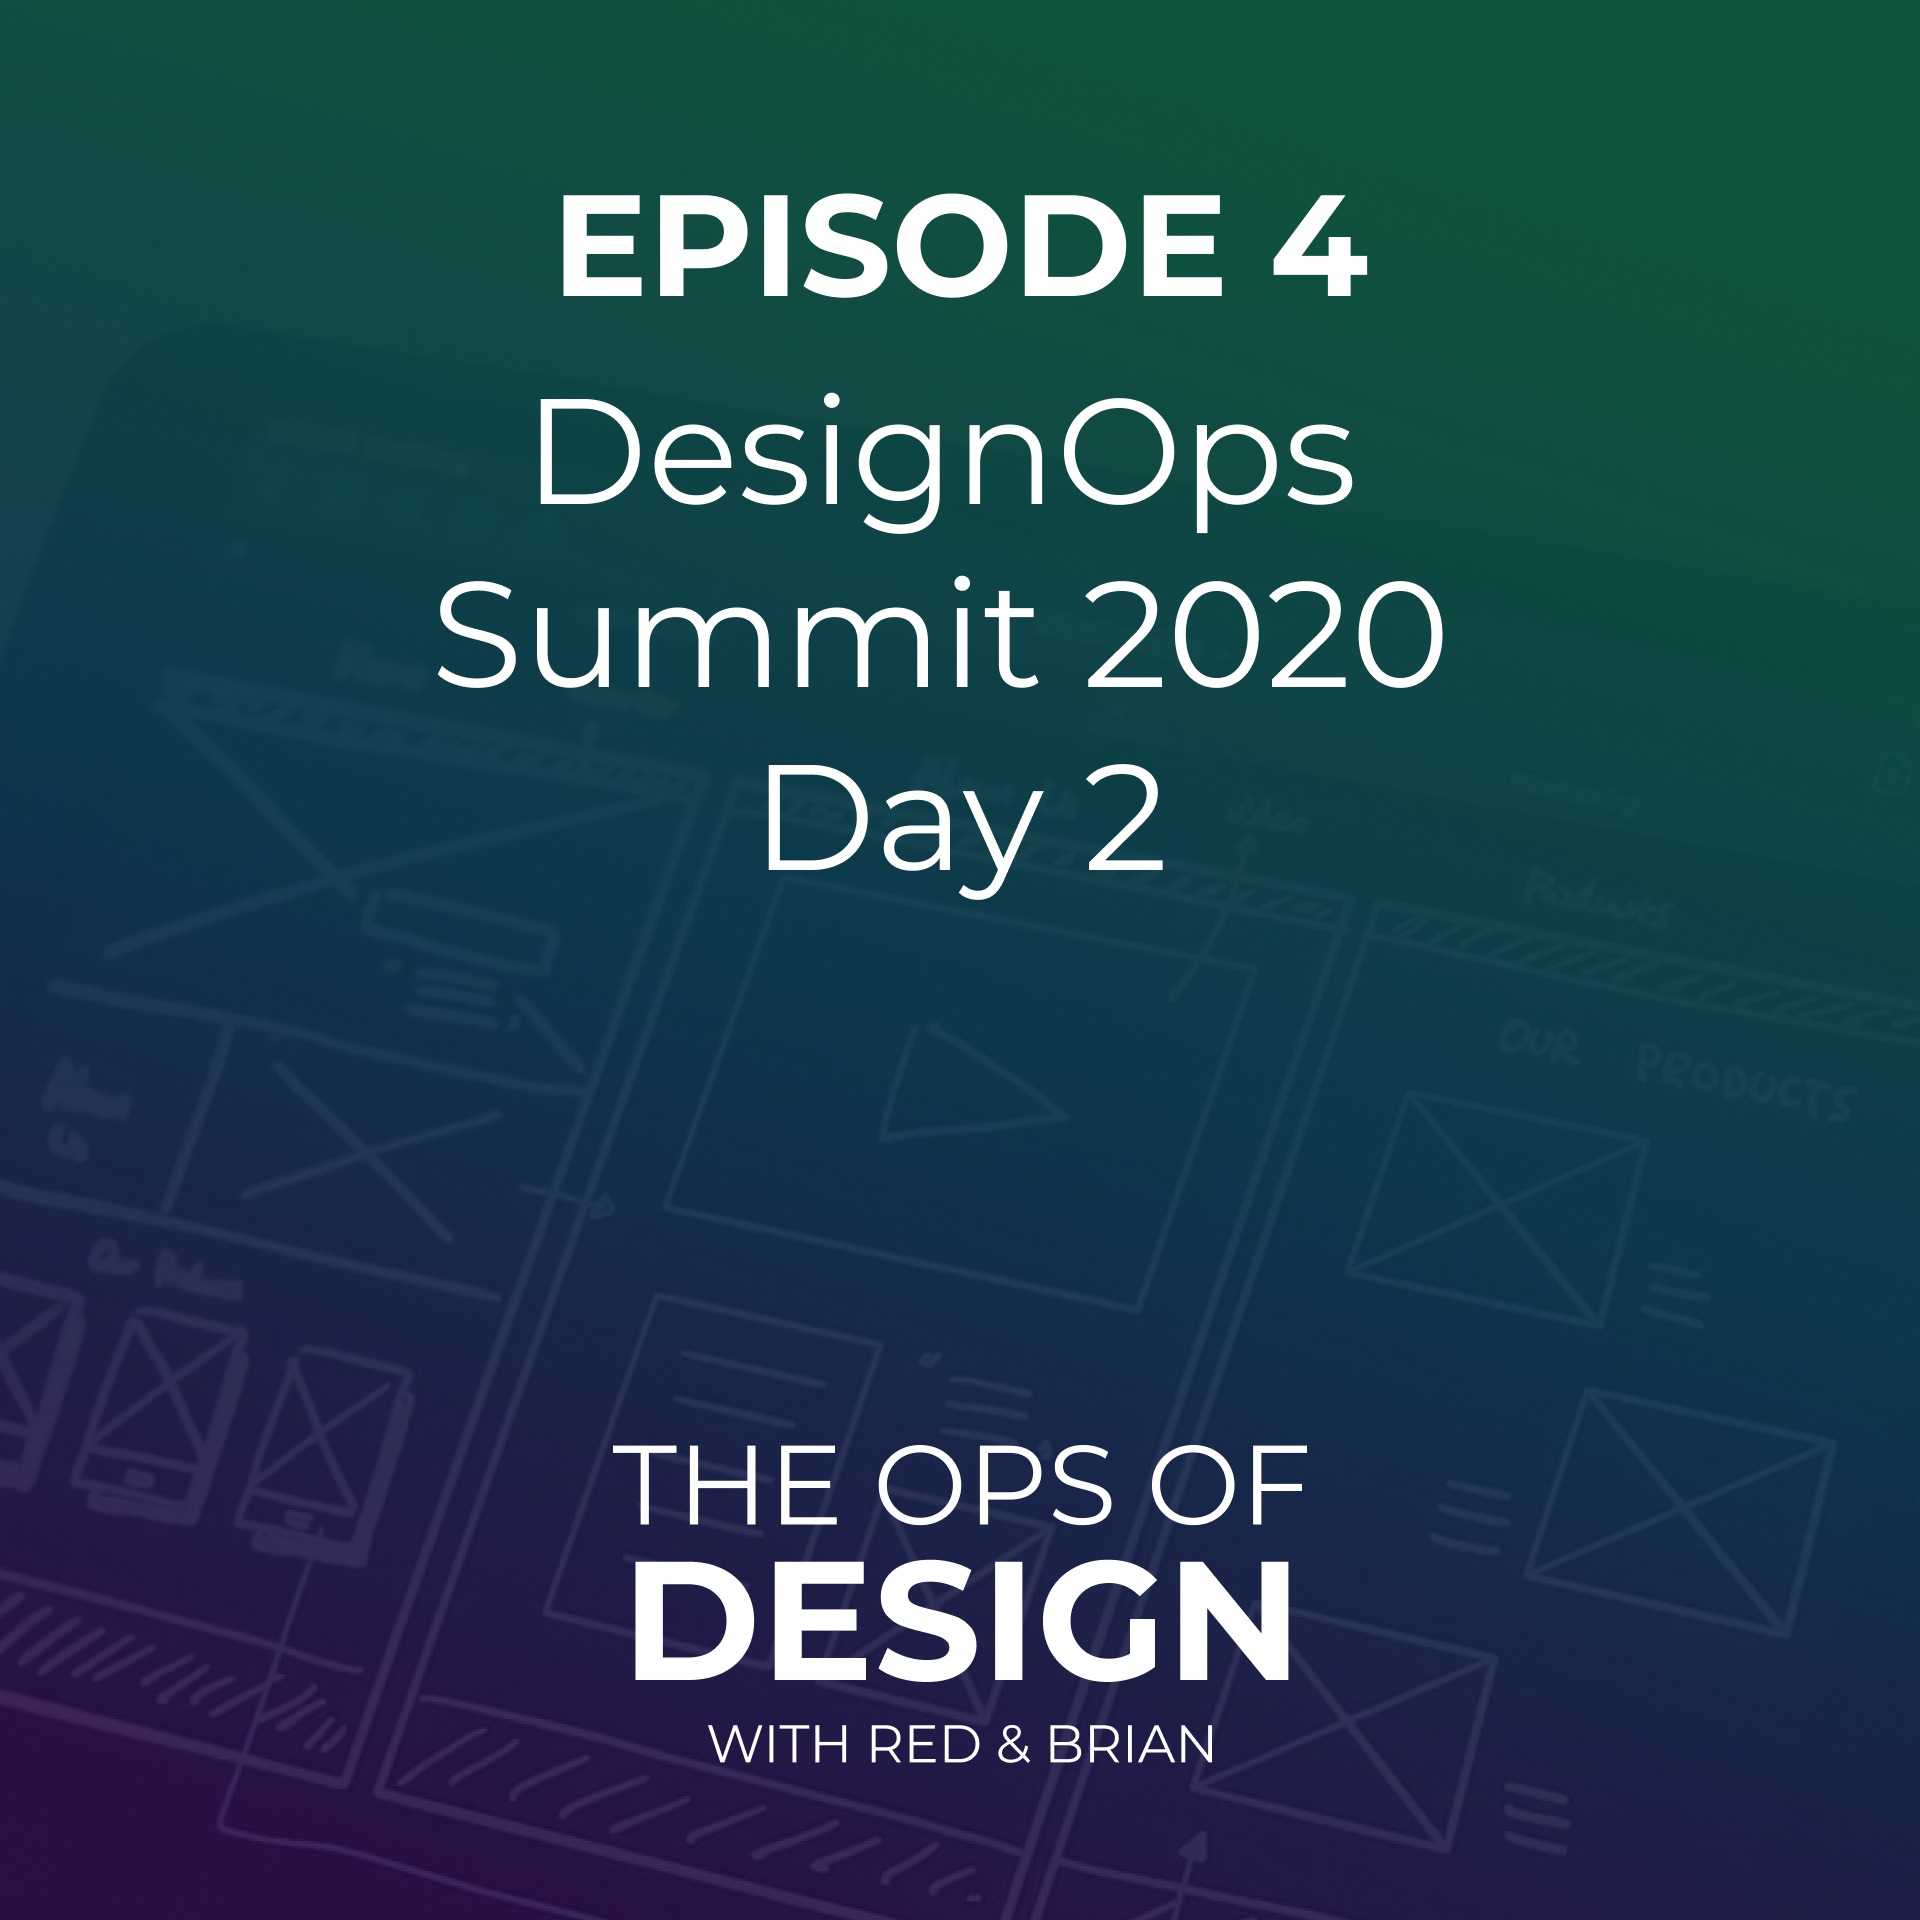 DesignOps Summit 2020 Day 2